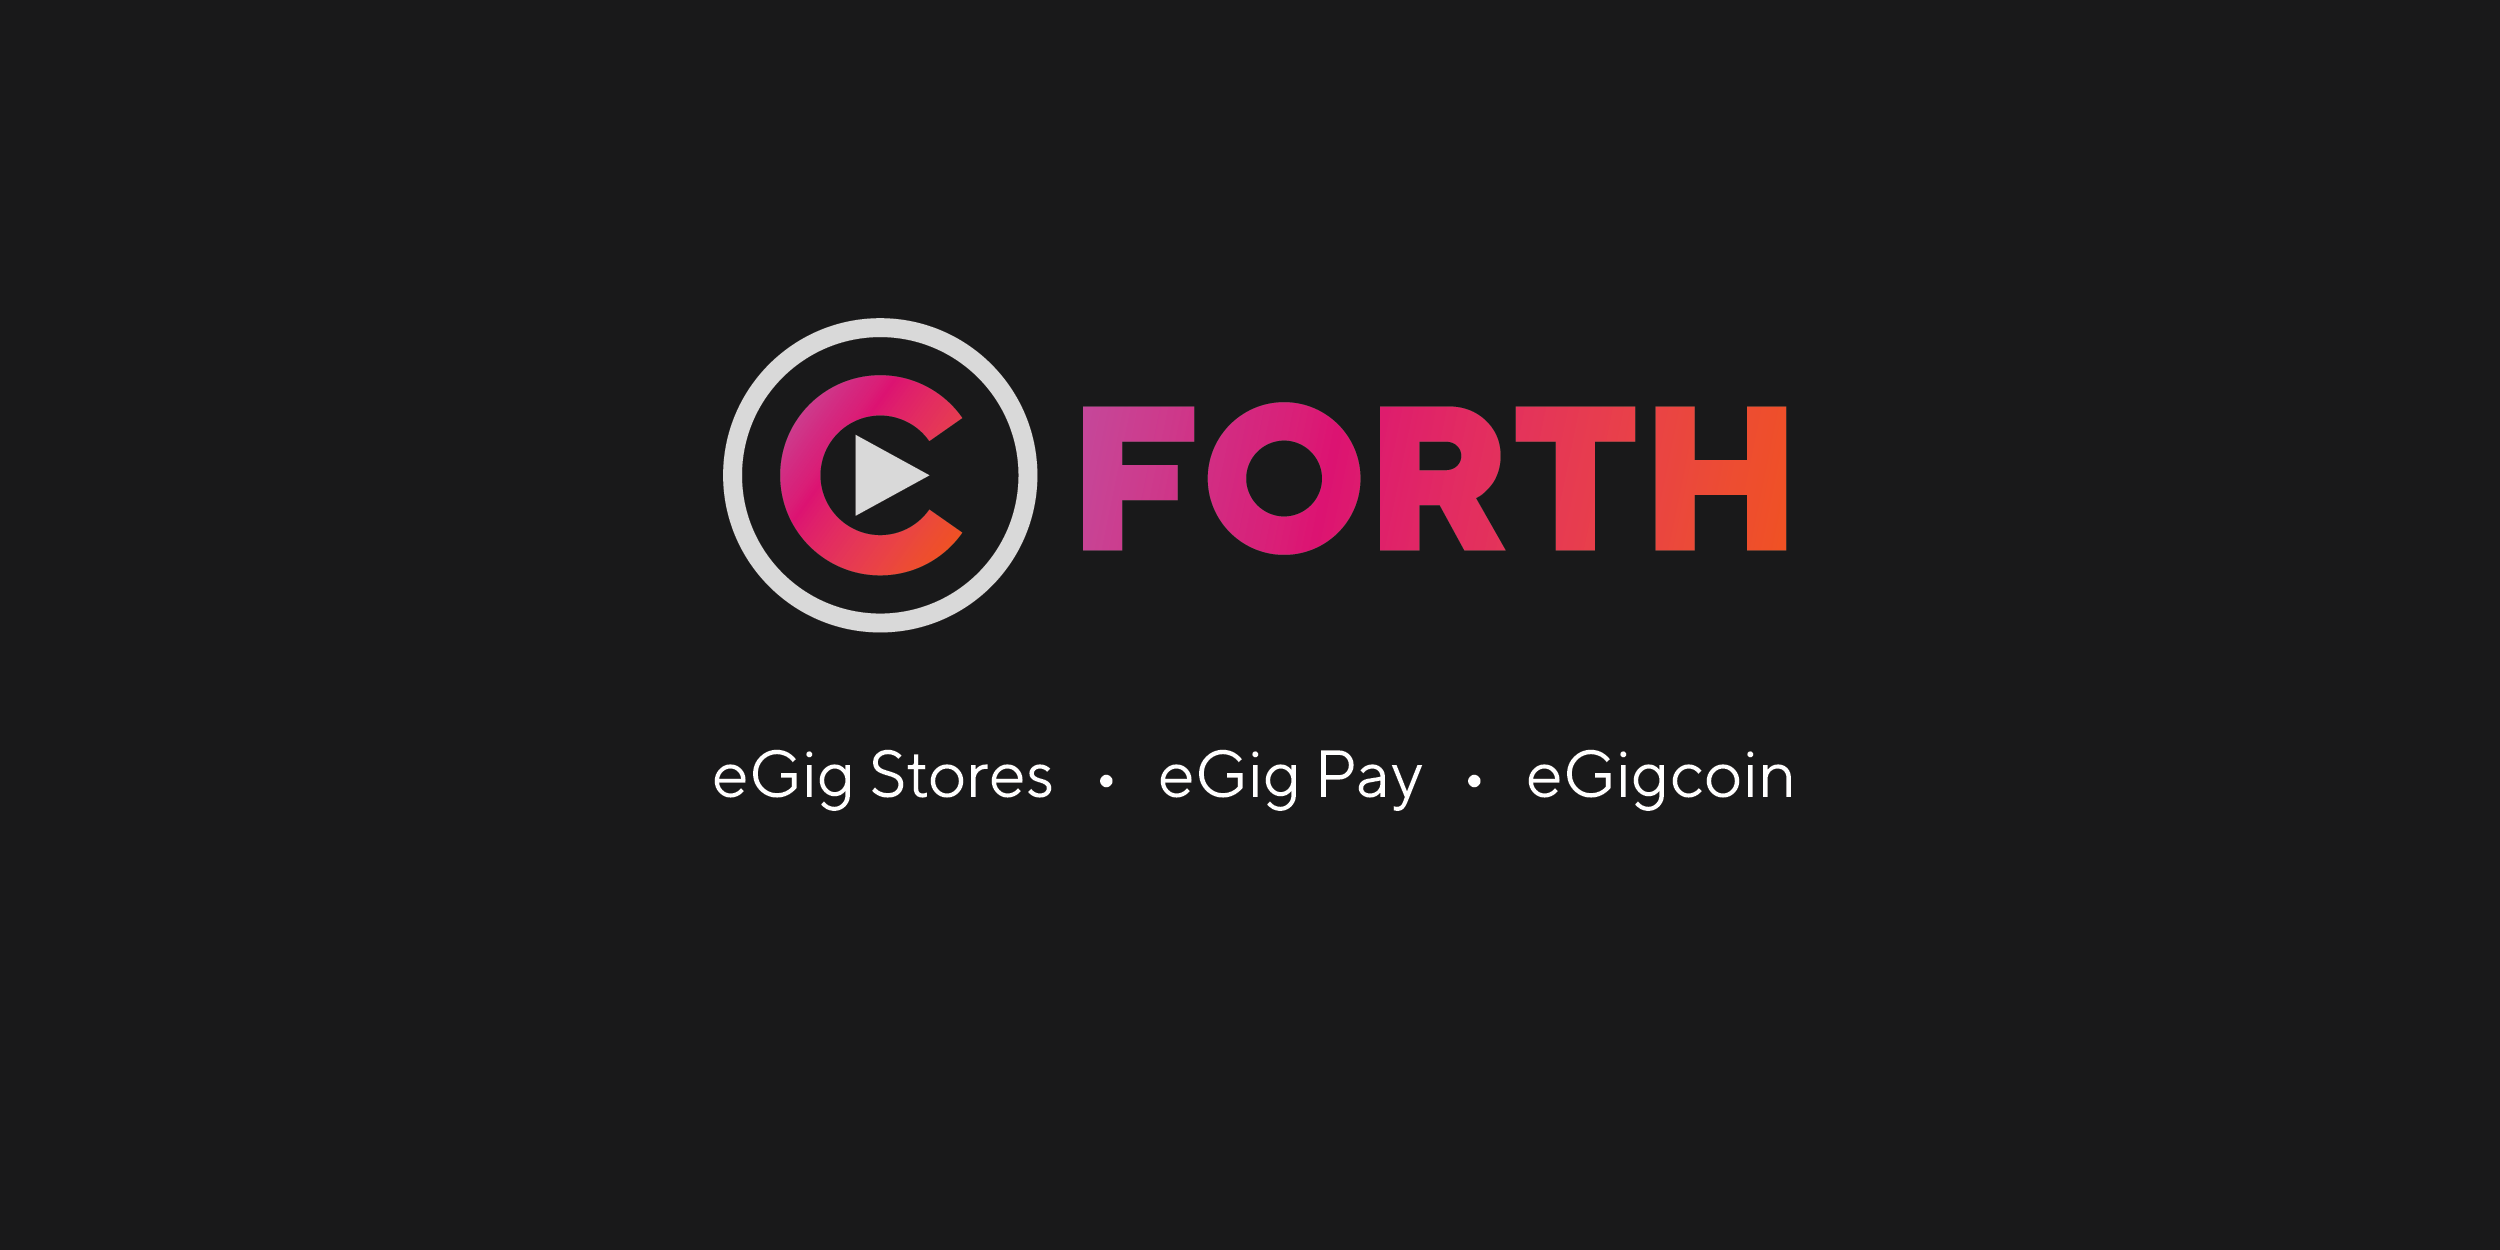 (©) FORTH

eGig Stores « eGig Pay « eGigcoin